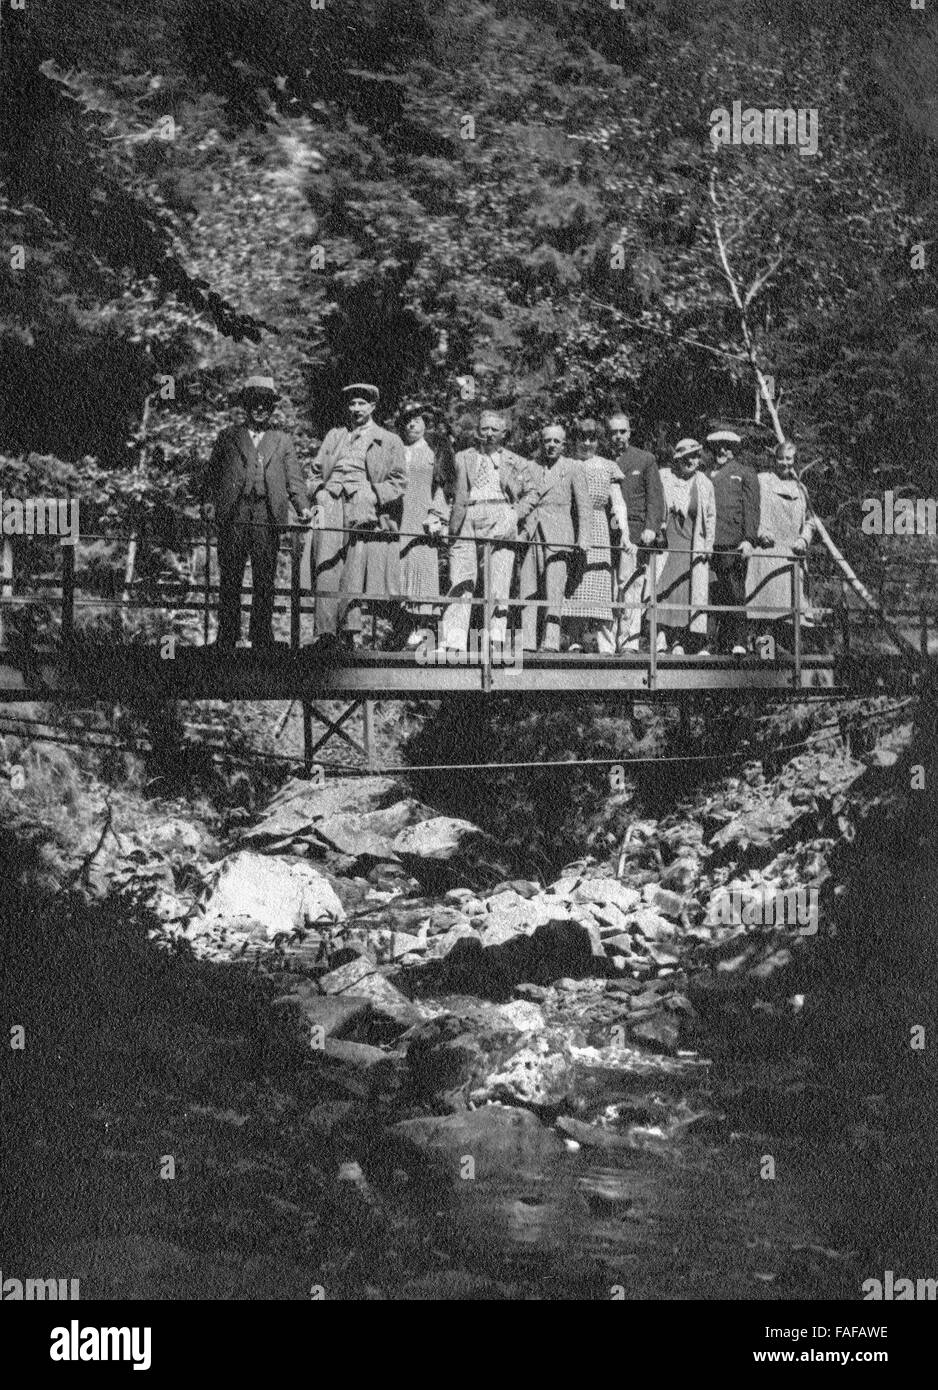 Touristengruppe posiert in der Ravennschlucht, Schweiz 1930er Jahre. Tpourist group posing at Ravenna canyon, Switzerland 1930s. Stock Photo